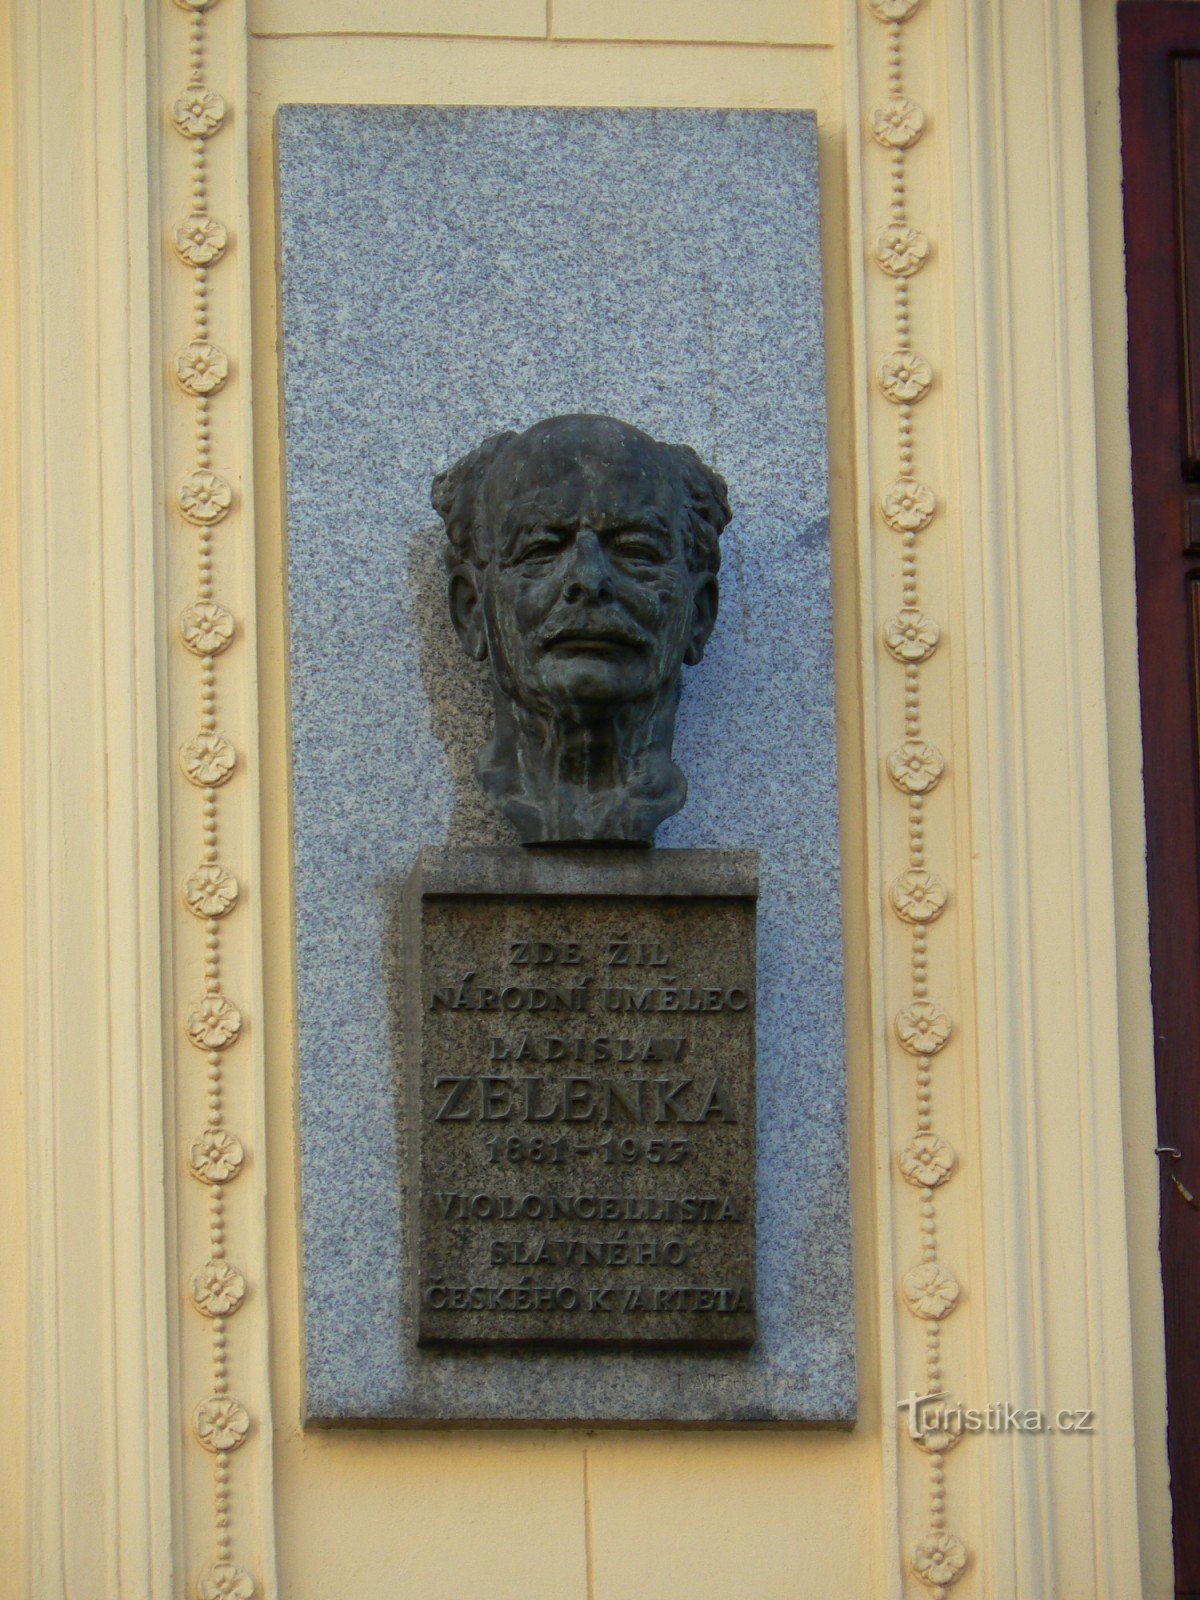 Spominska plošča Ladislava Zelenke